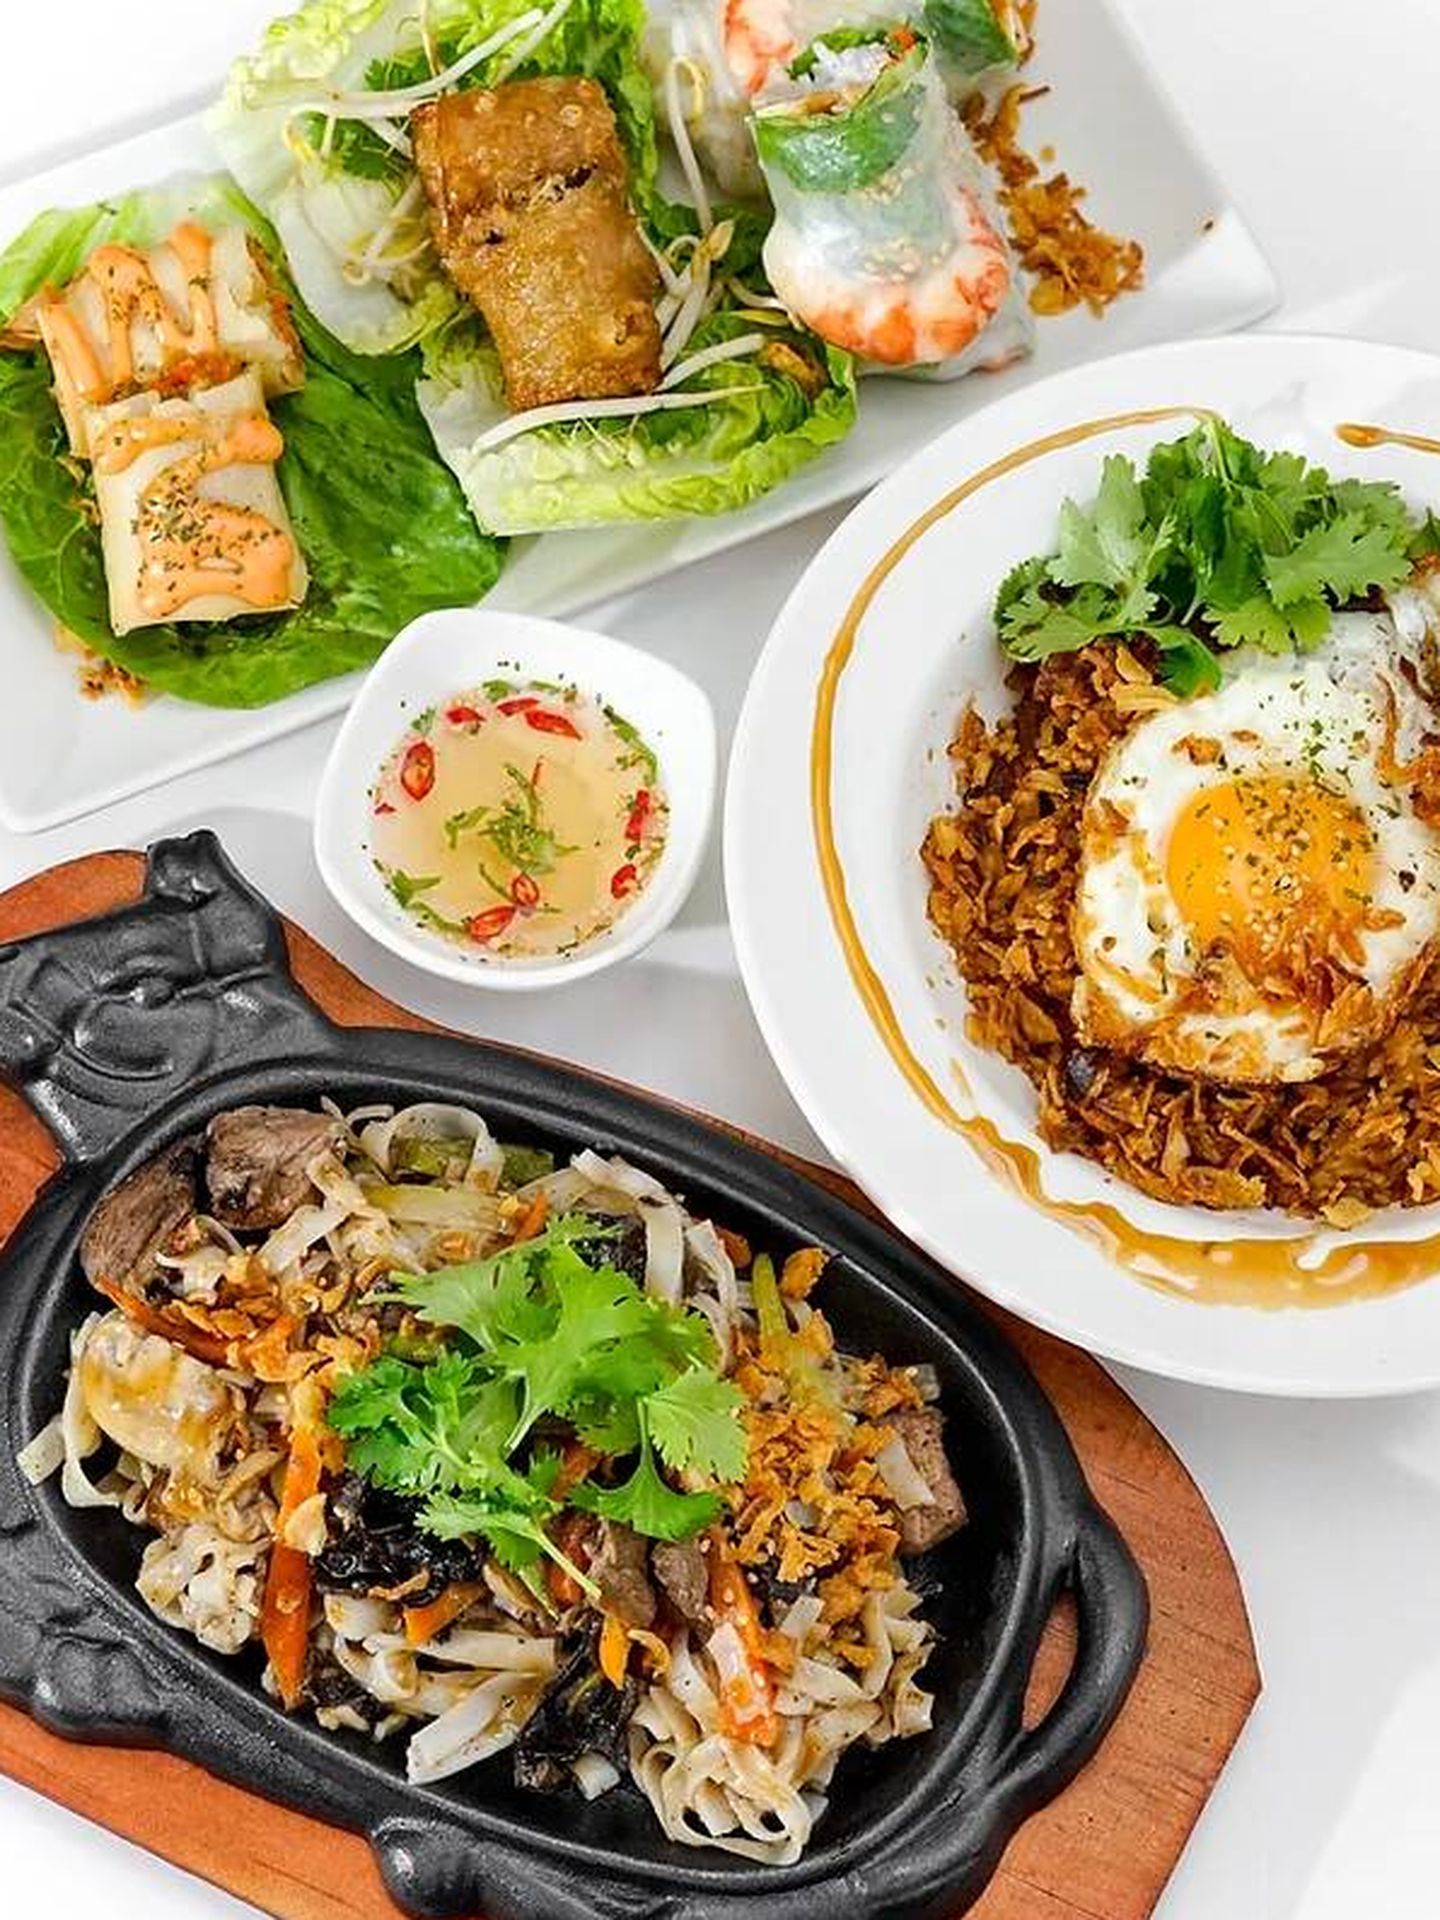 Ejemplos de comida callejera vietnamita del restaurante Distrito 1. (Cortesía/Distrito 1)